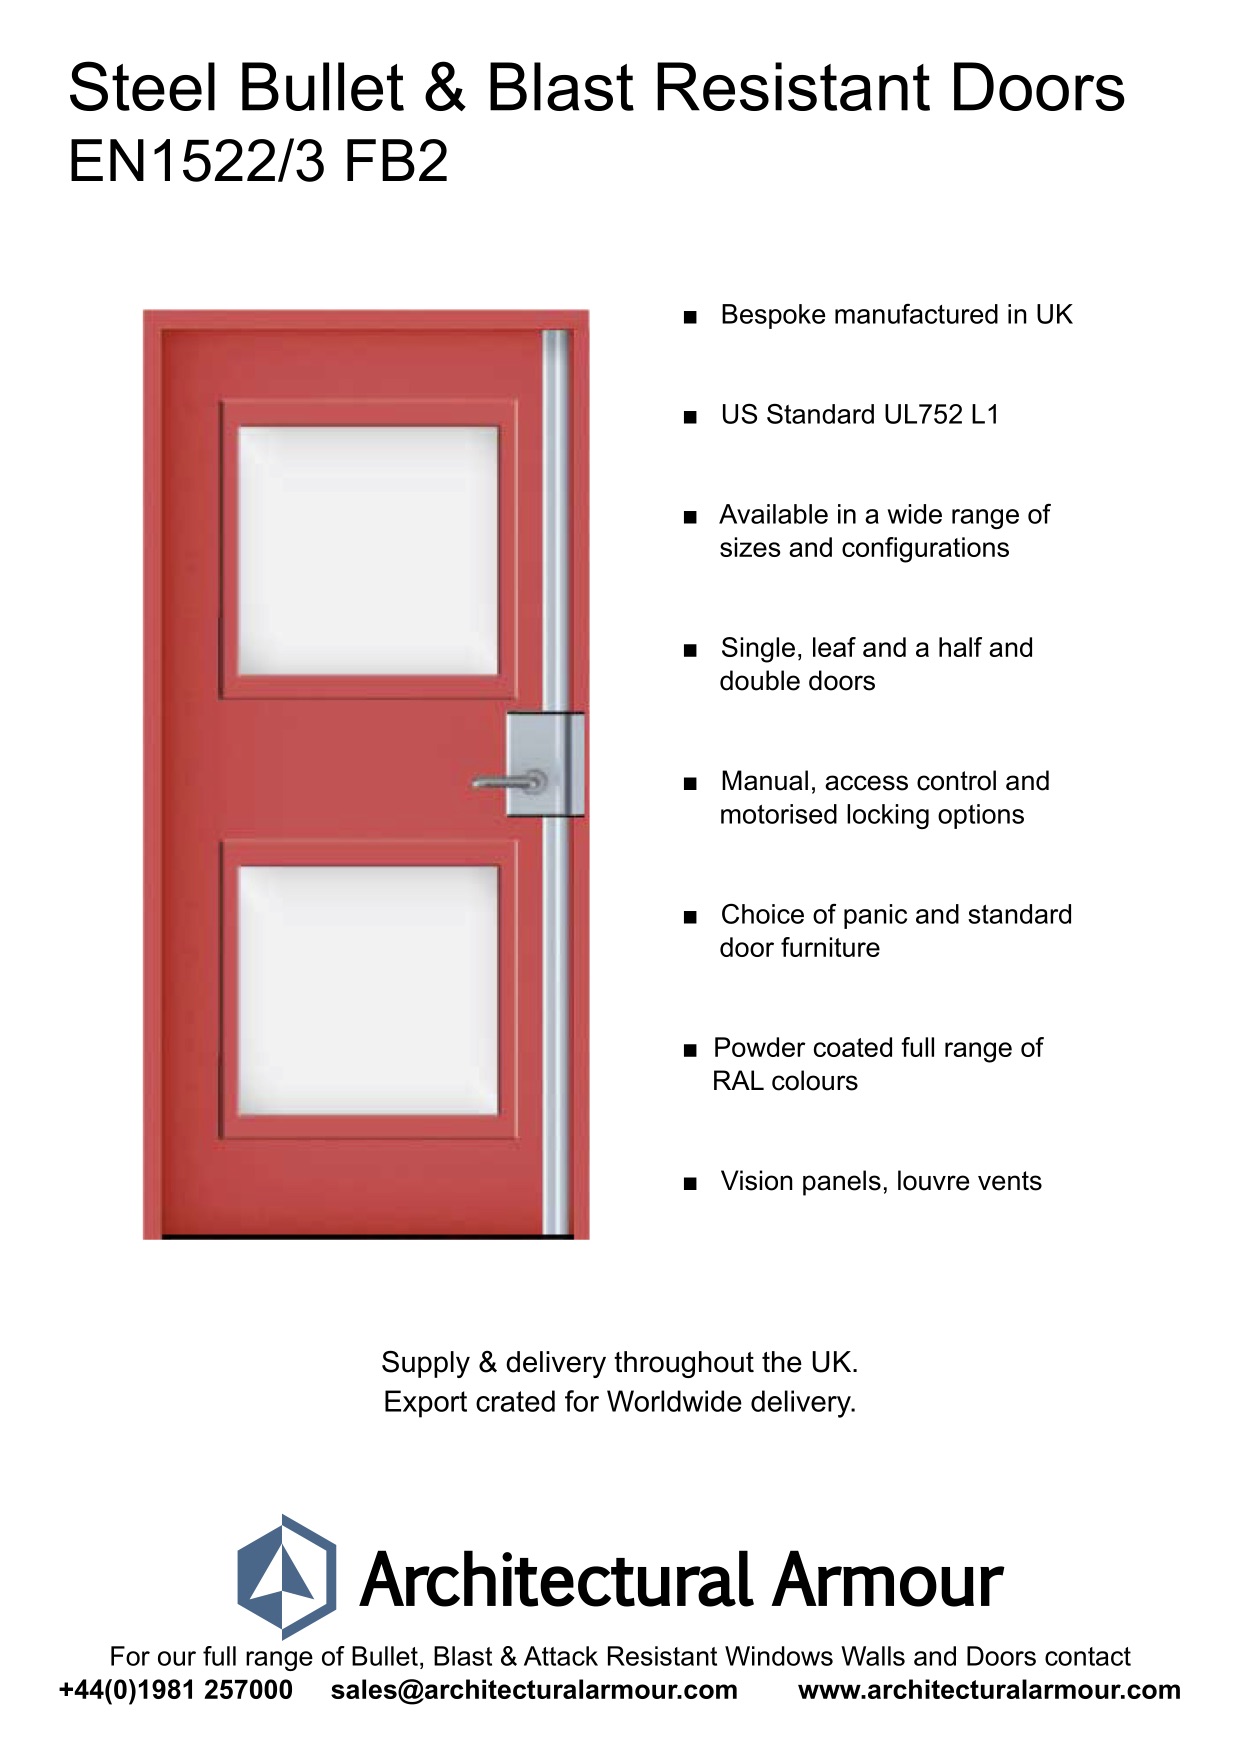 Bullet-and-Blast-Resistant-Steel-Doors-Vision-Panel-EN1522-3-FB2-BR2-UK